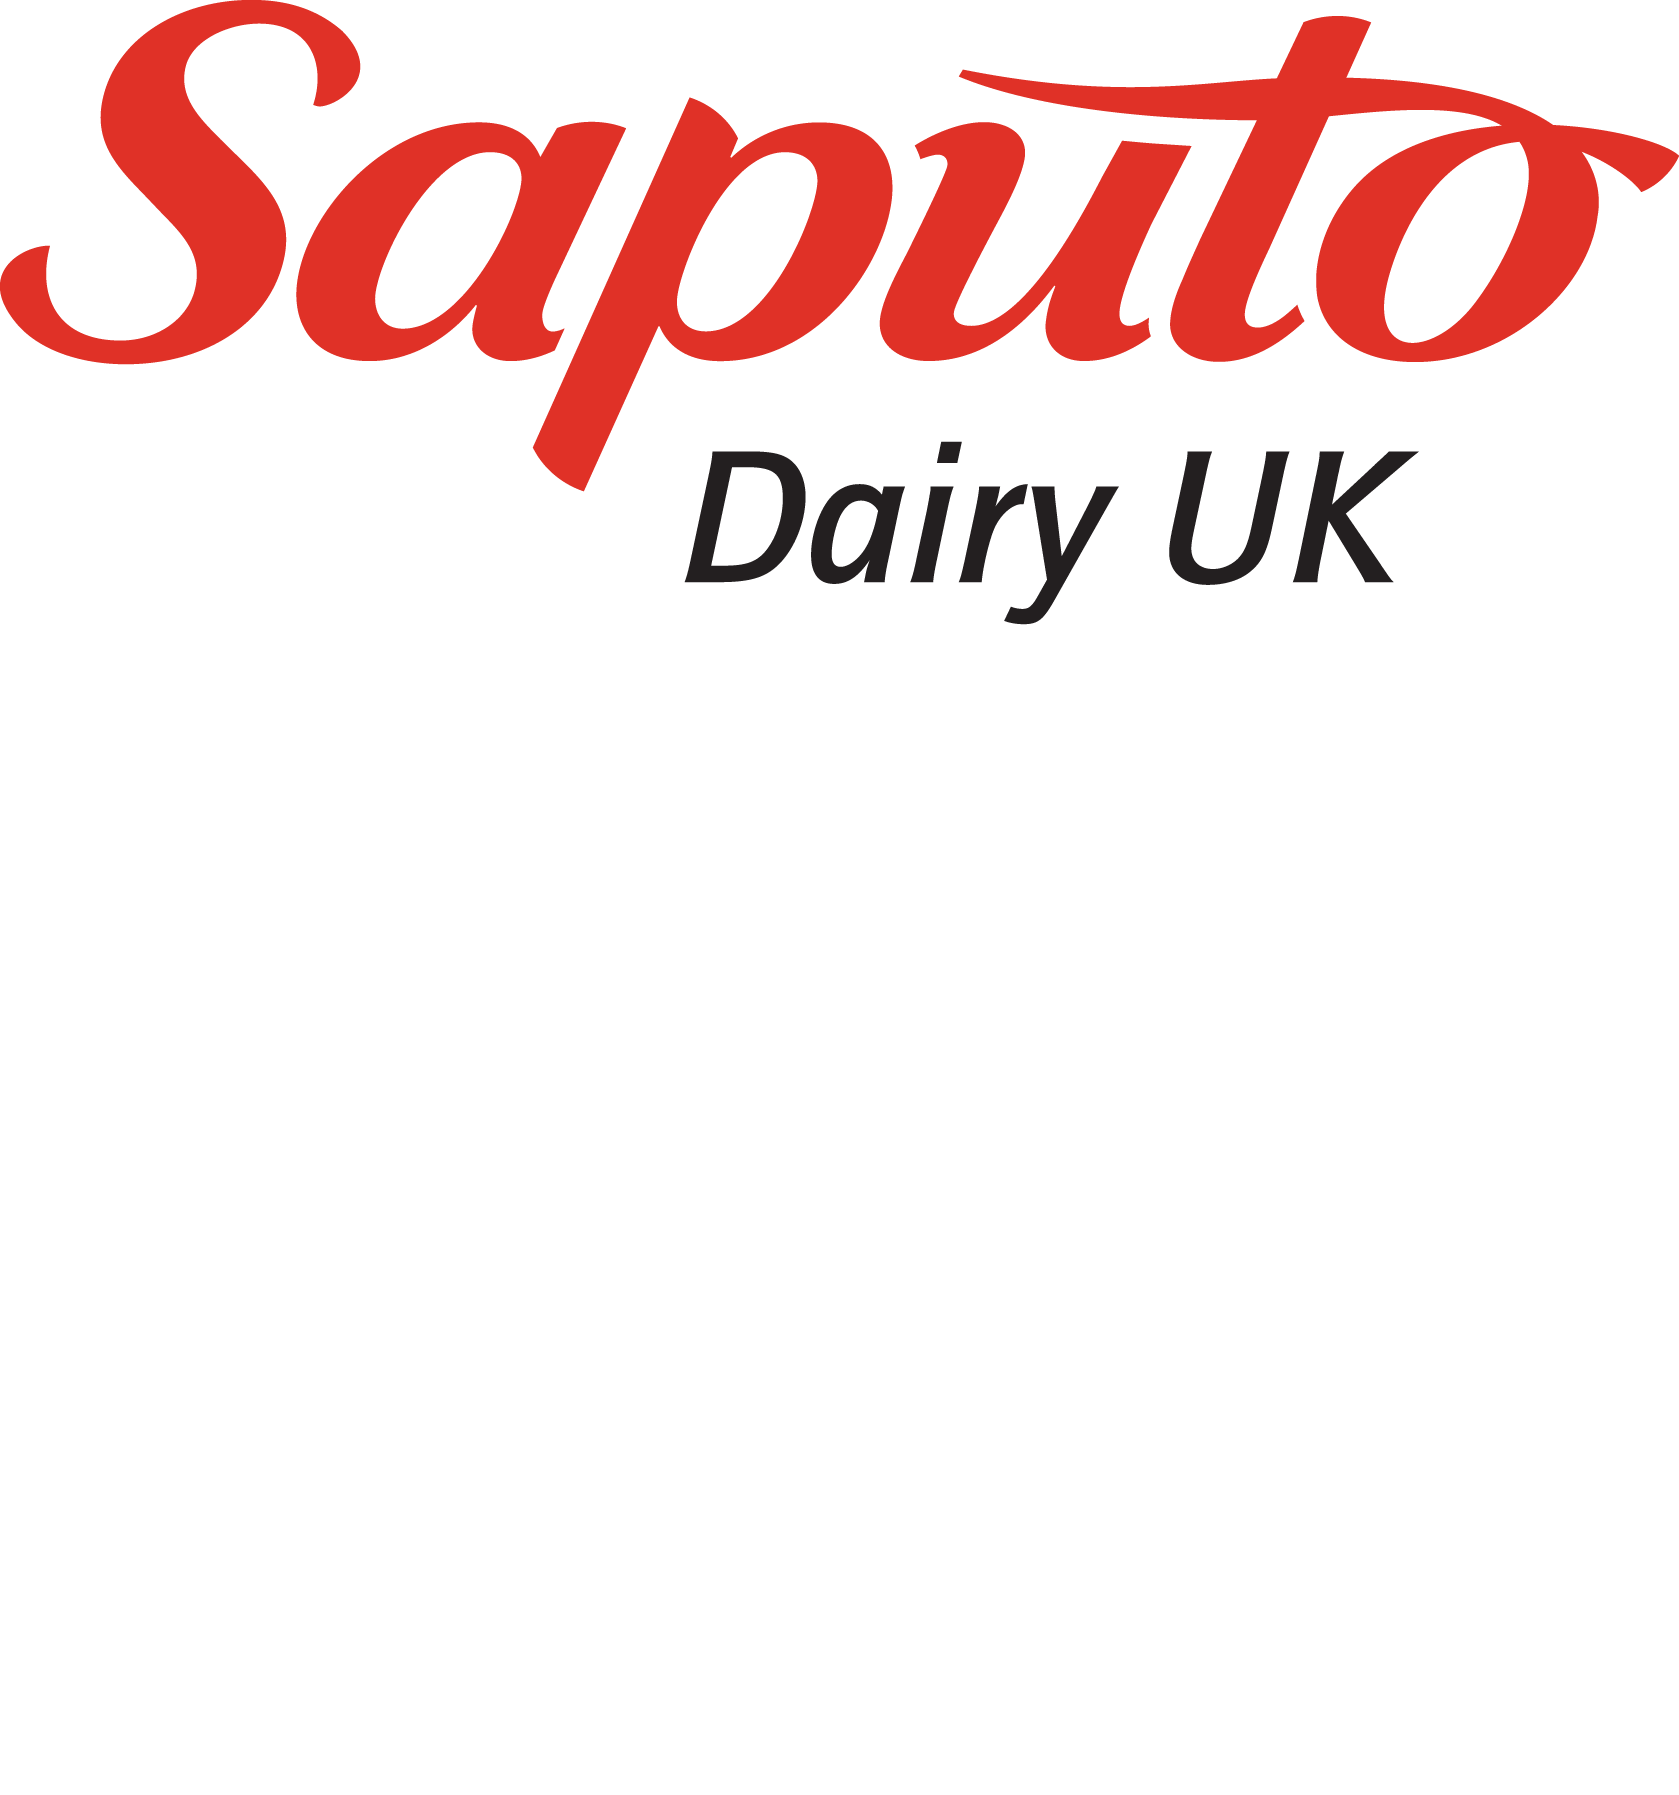 Logo_SaputoDairy-UK_CMYK